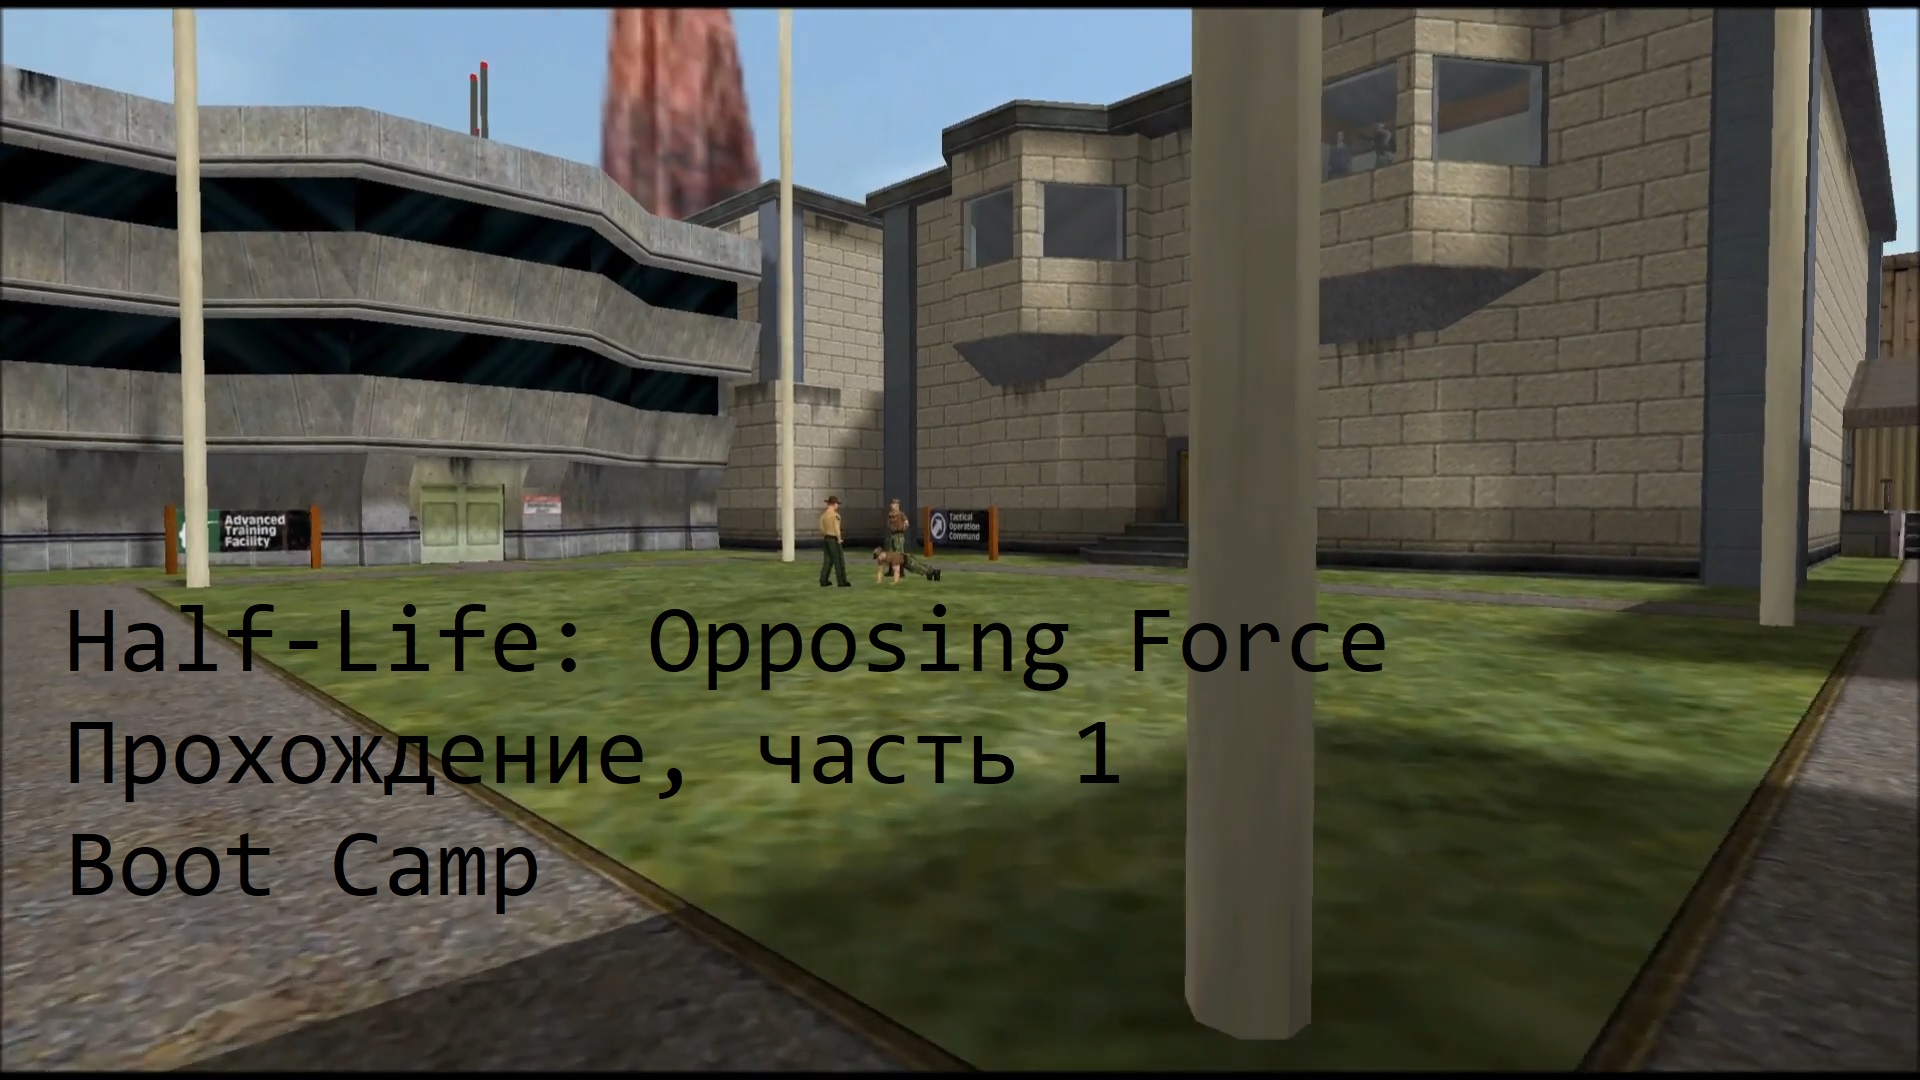 Half-Life: Opposing Force, Прохождение, часть 1 - Boot Camp